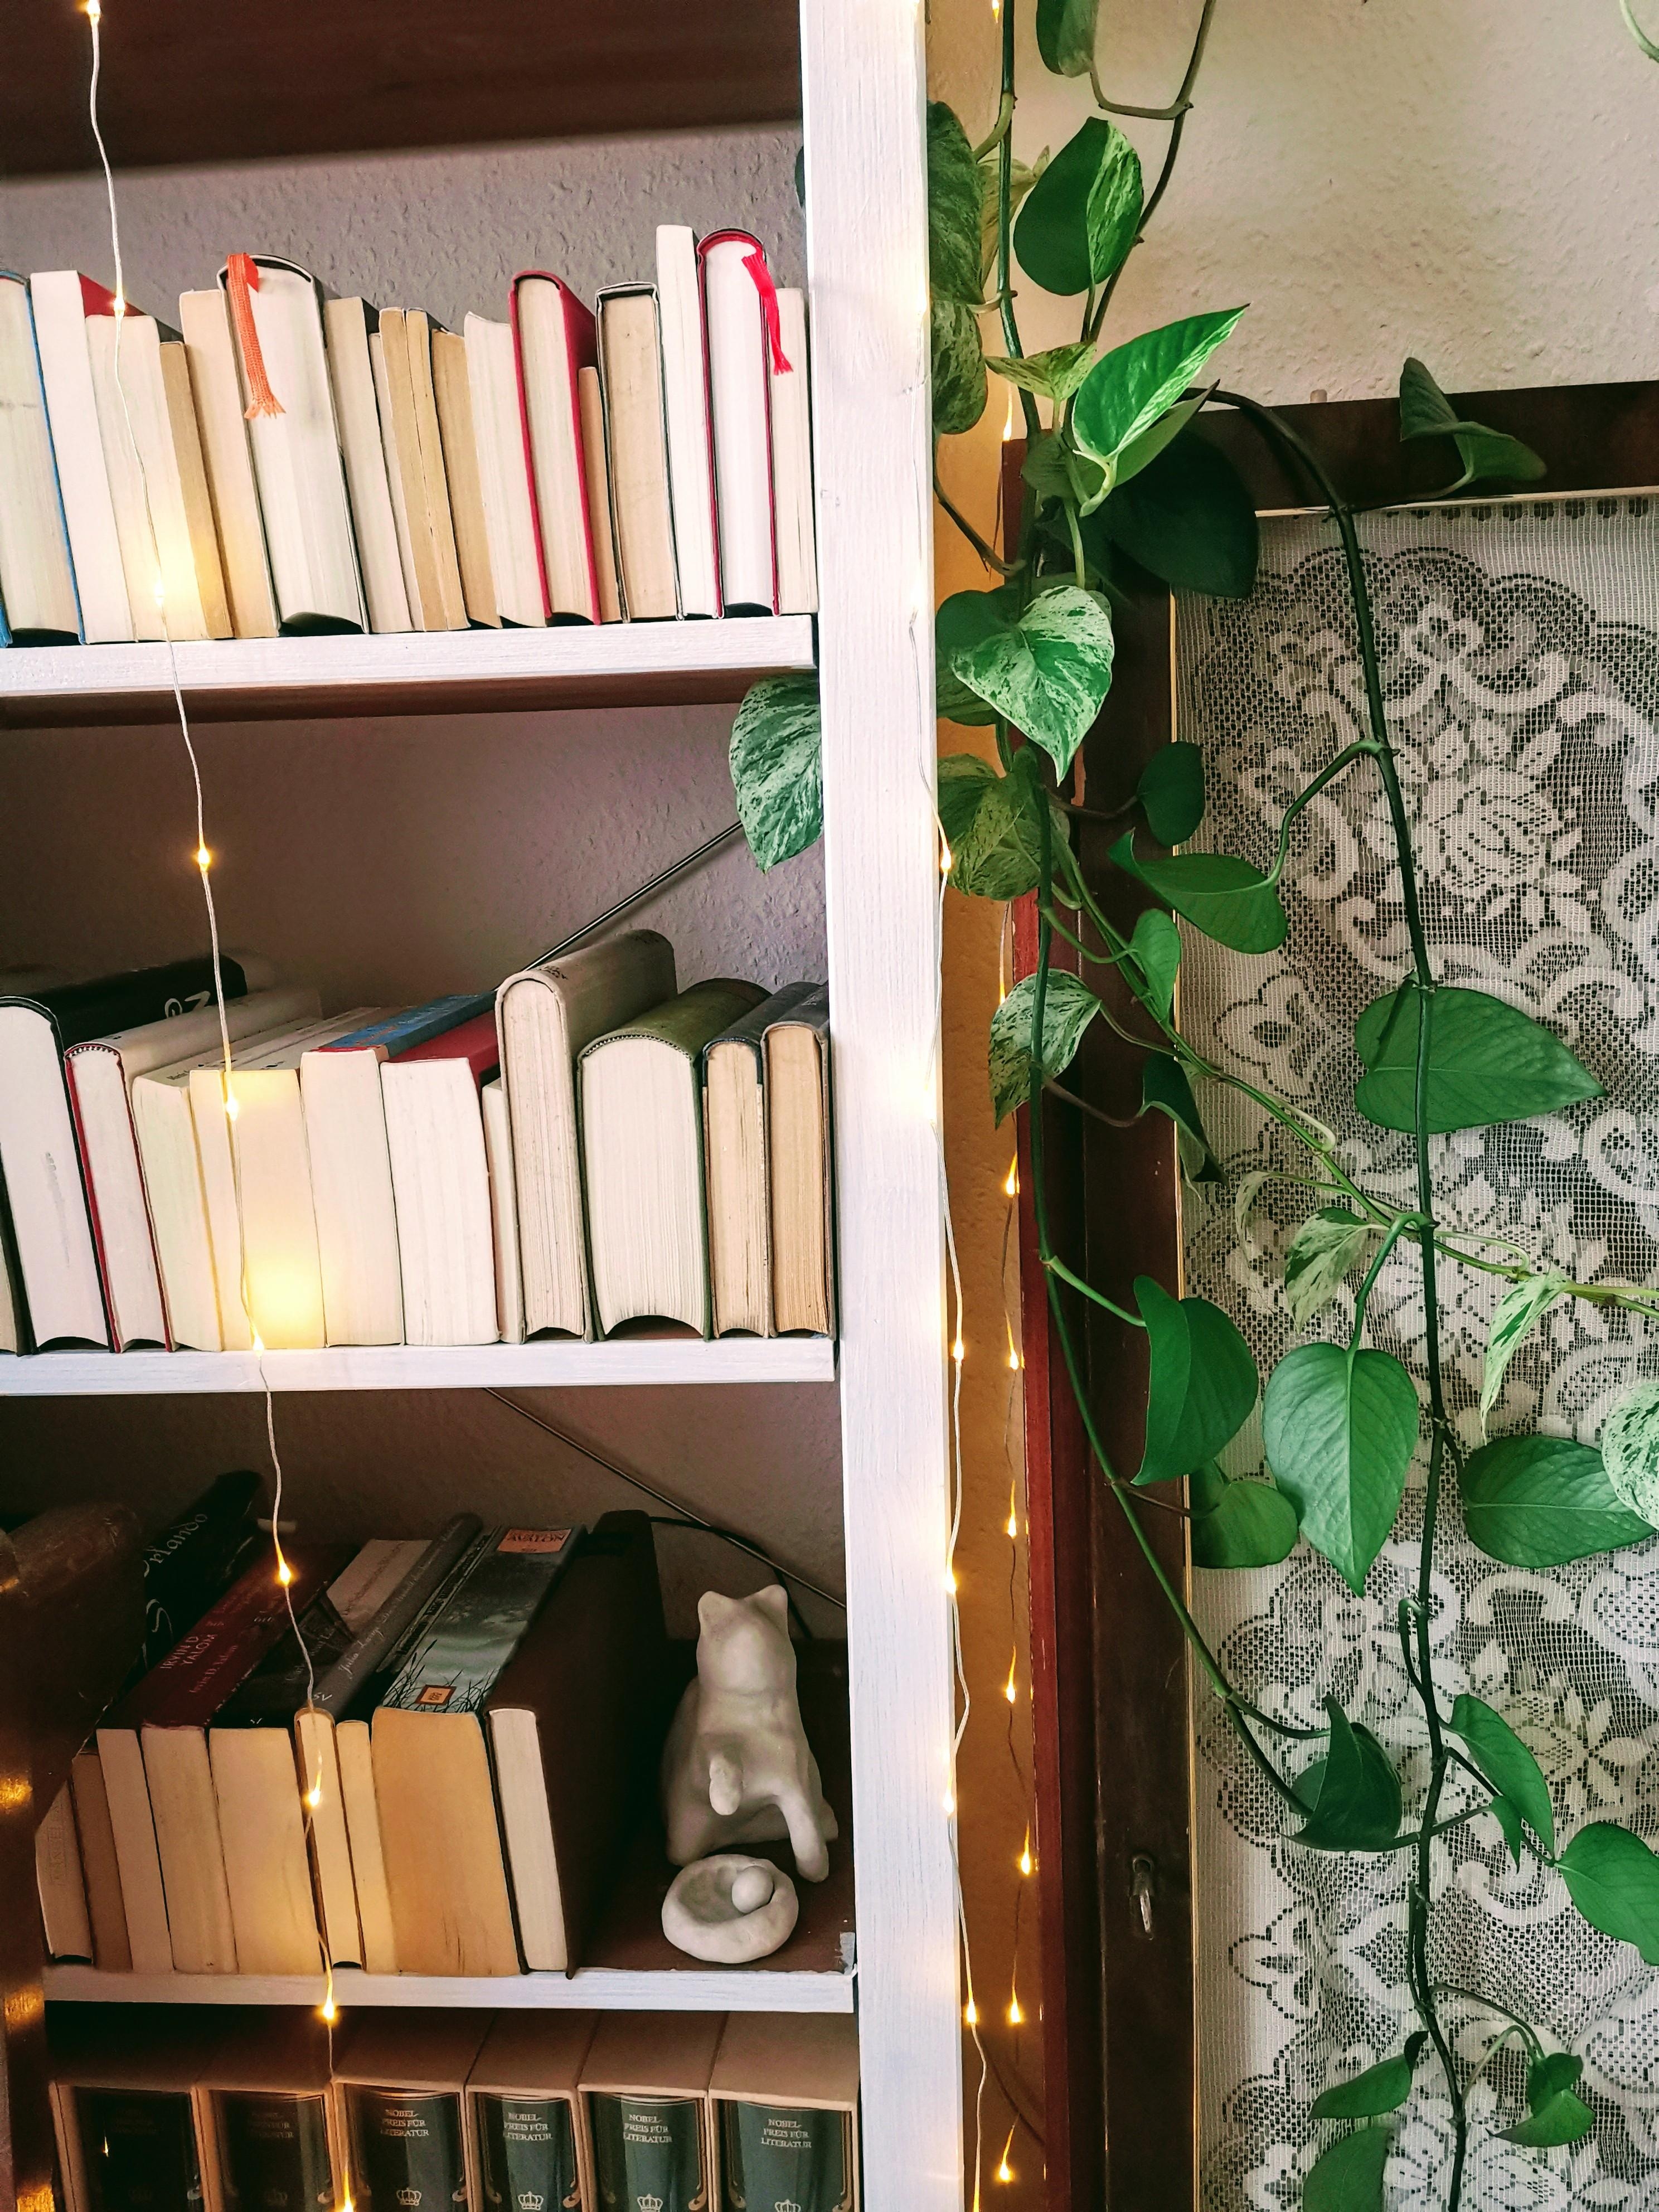 Bücher, Pflanzen, DIY und schönes Licht. Das ist für mich #hygge #livingchallenge 